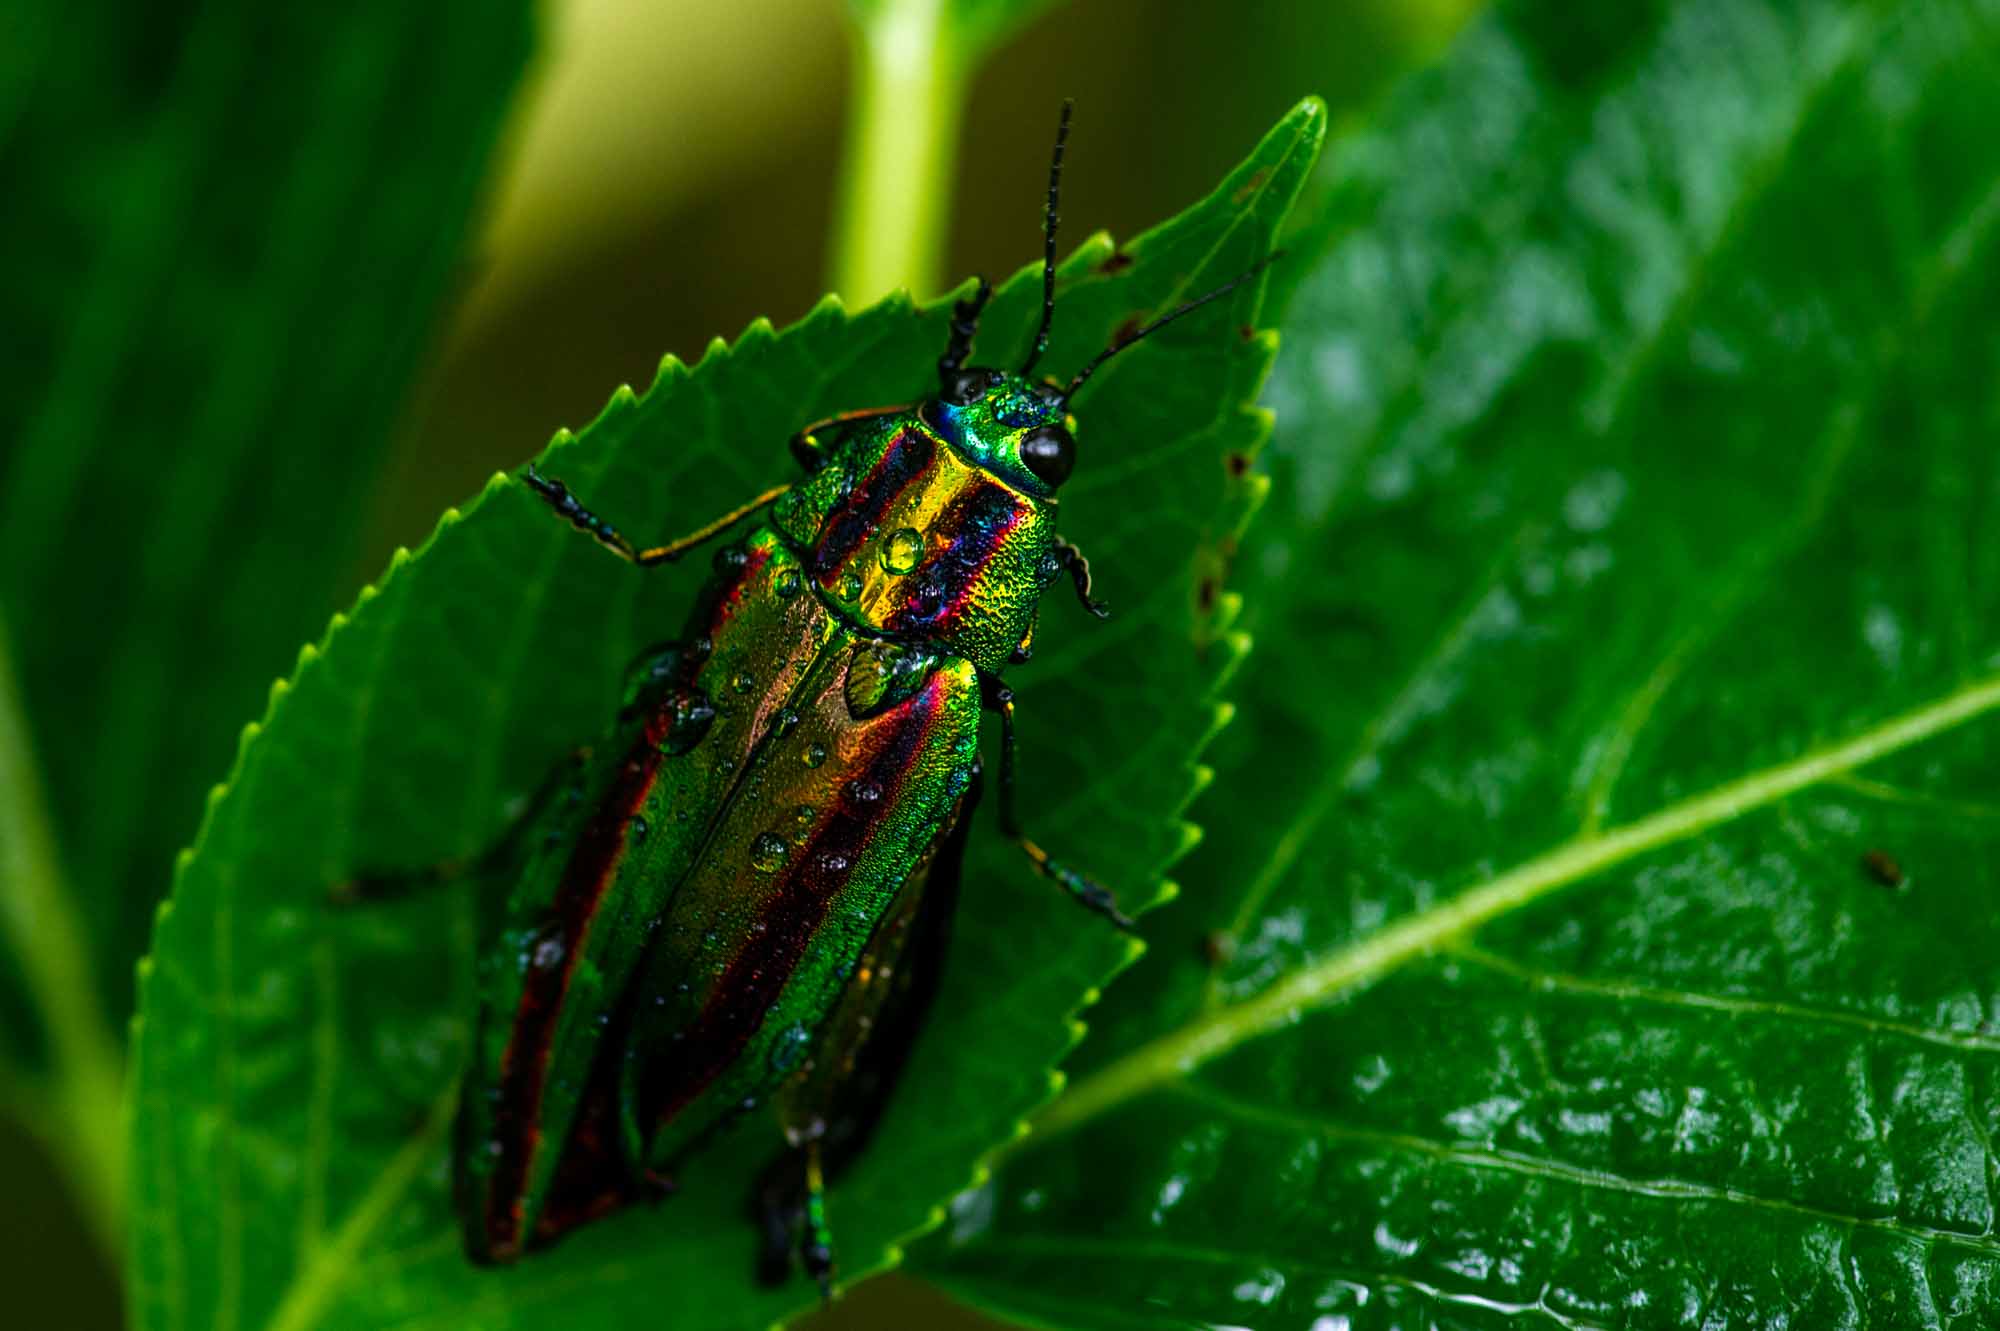 ヤマトタマムシ 宝石の煌めきを持つ昆虫 虫の写真と生態なら昆虫写真図鑑 ムシミル